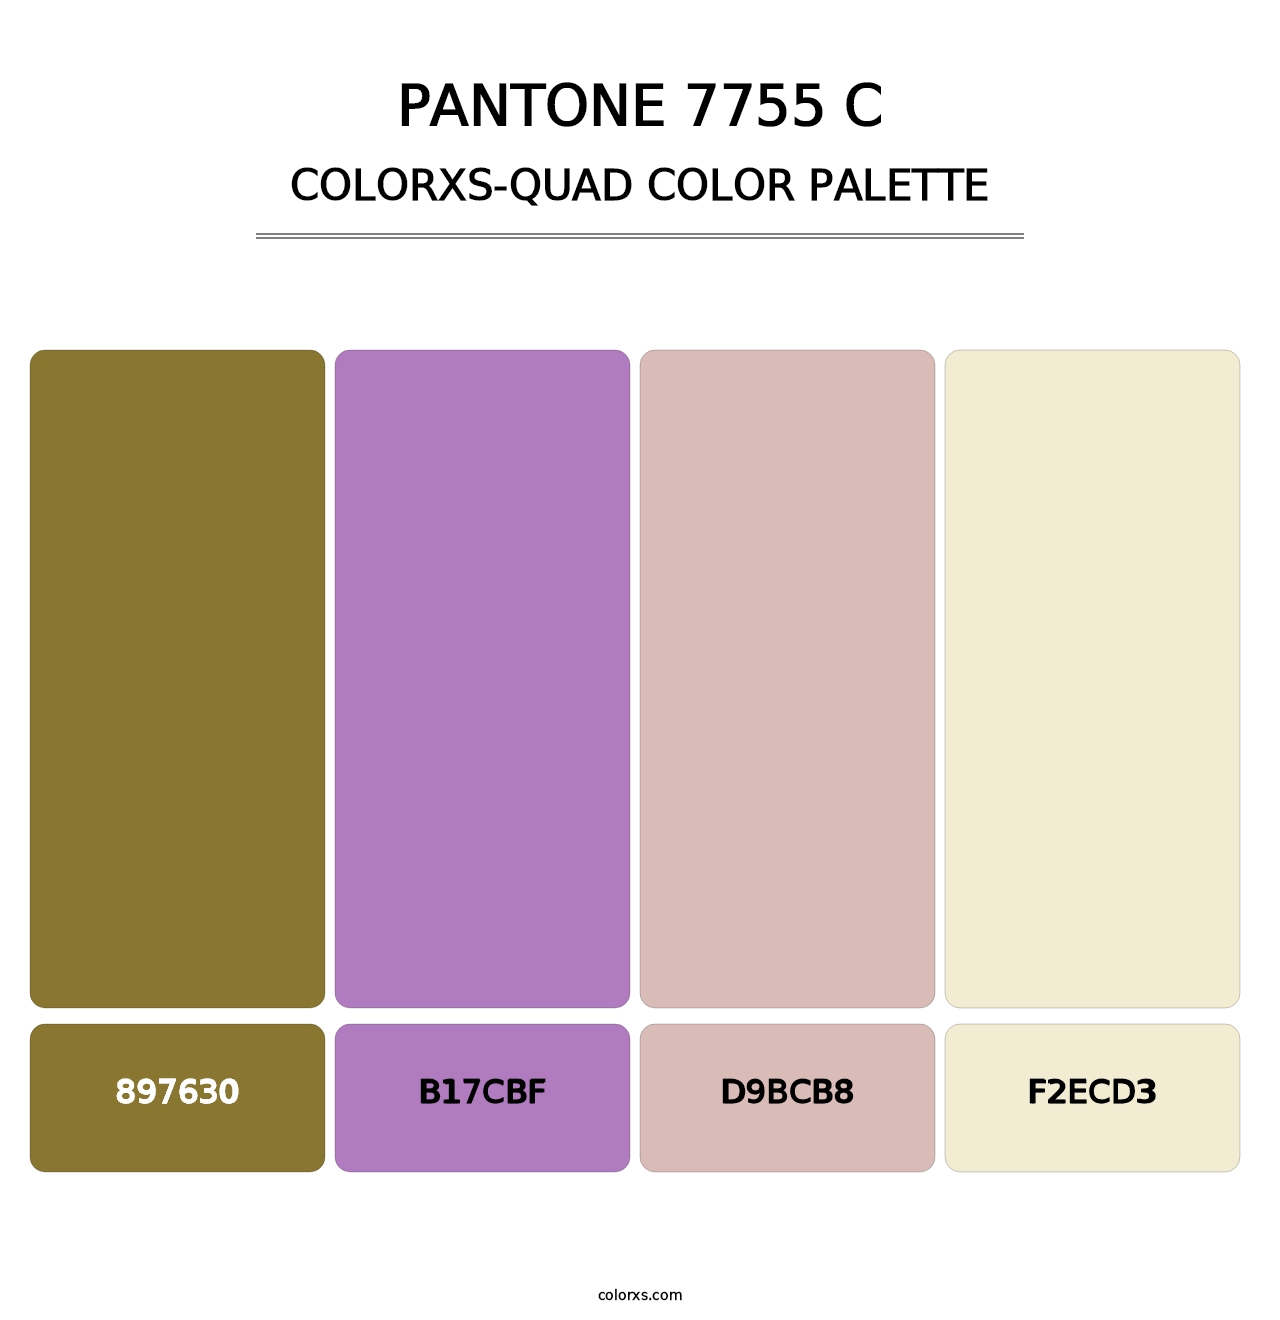 PANTONE 7755 C - Colorxs Quad Palette